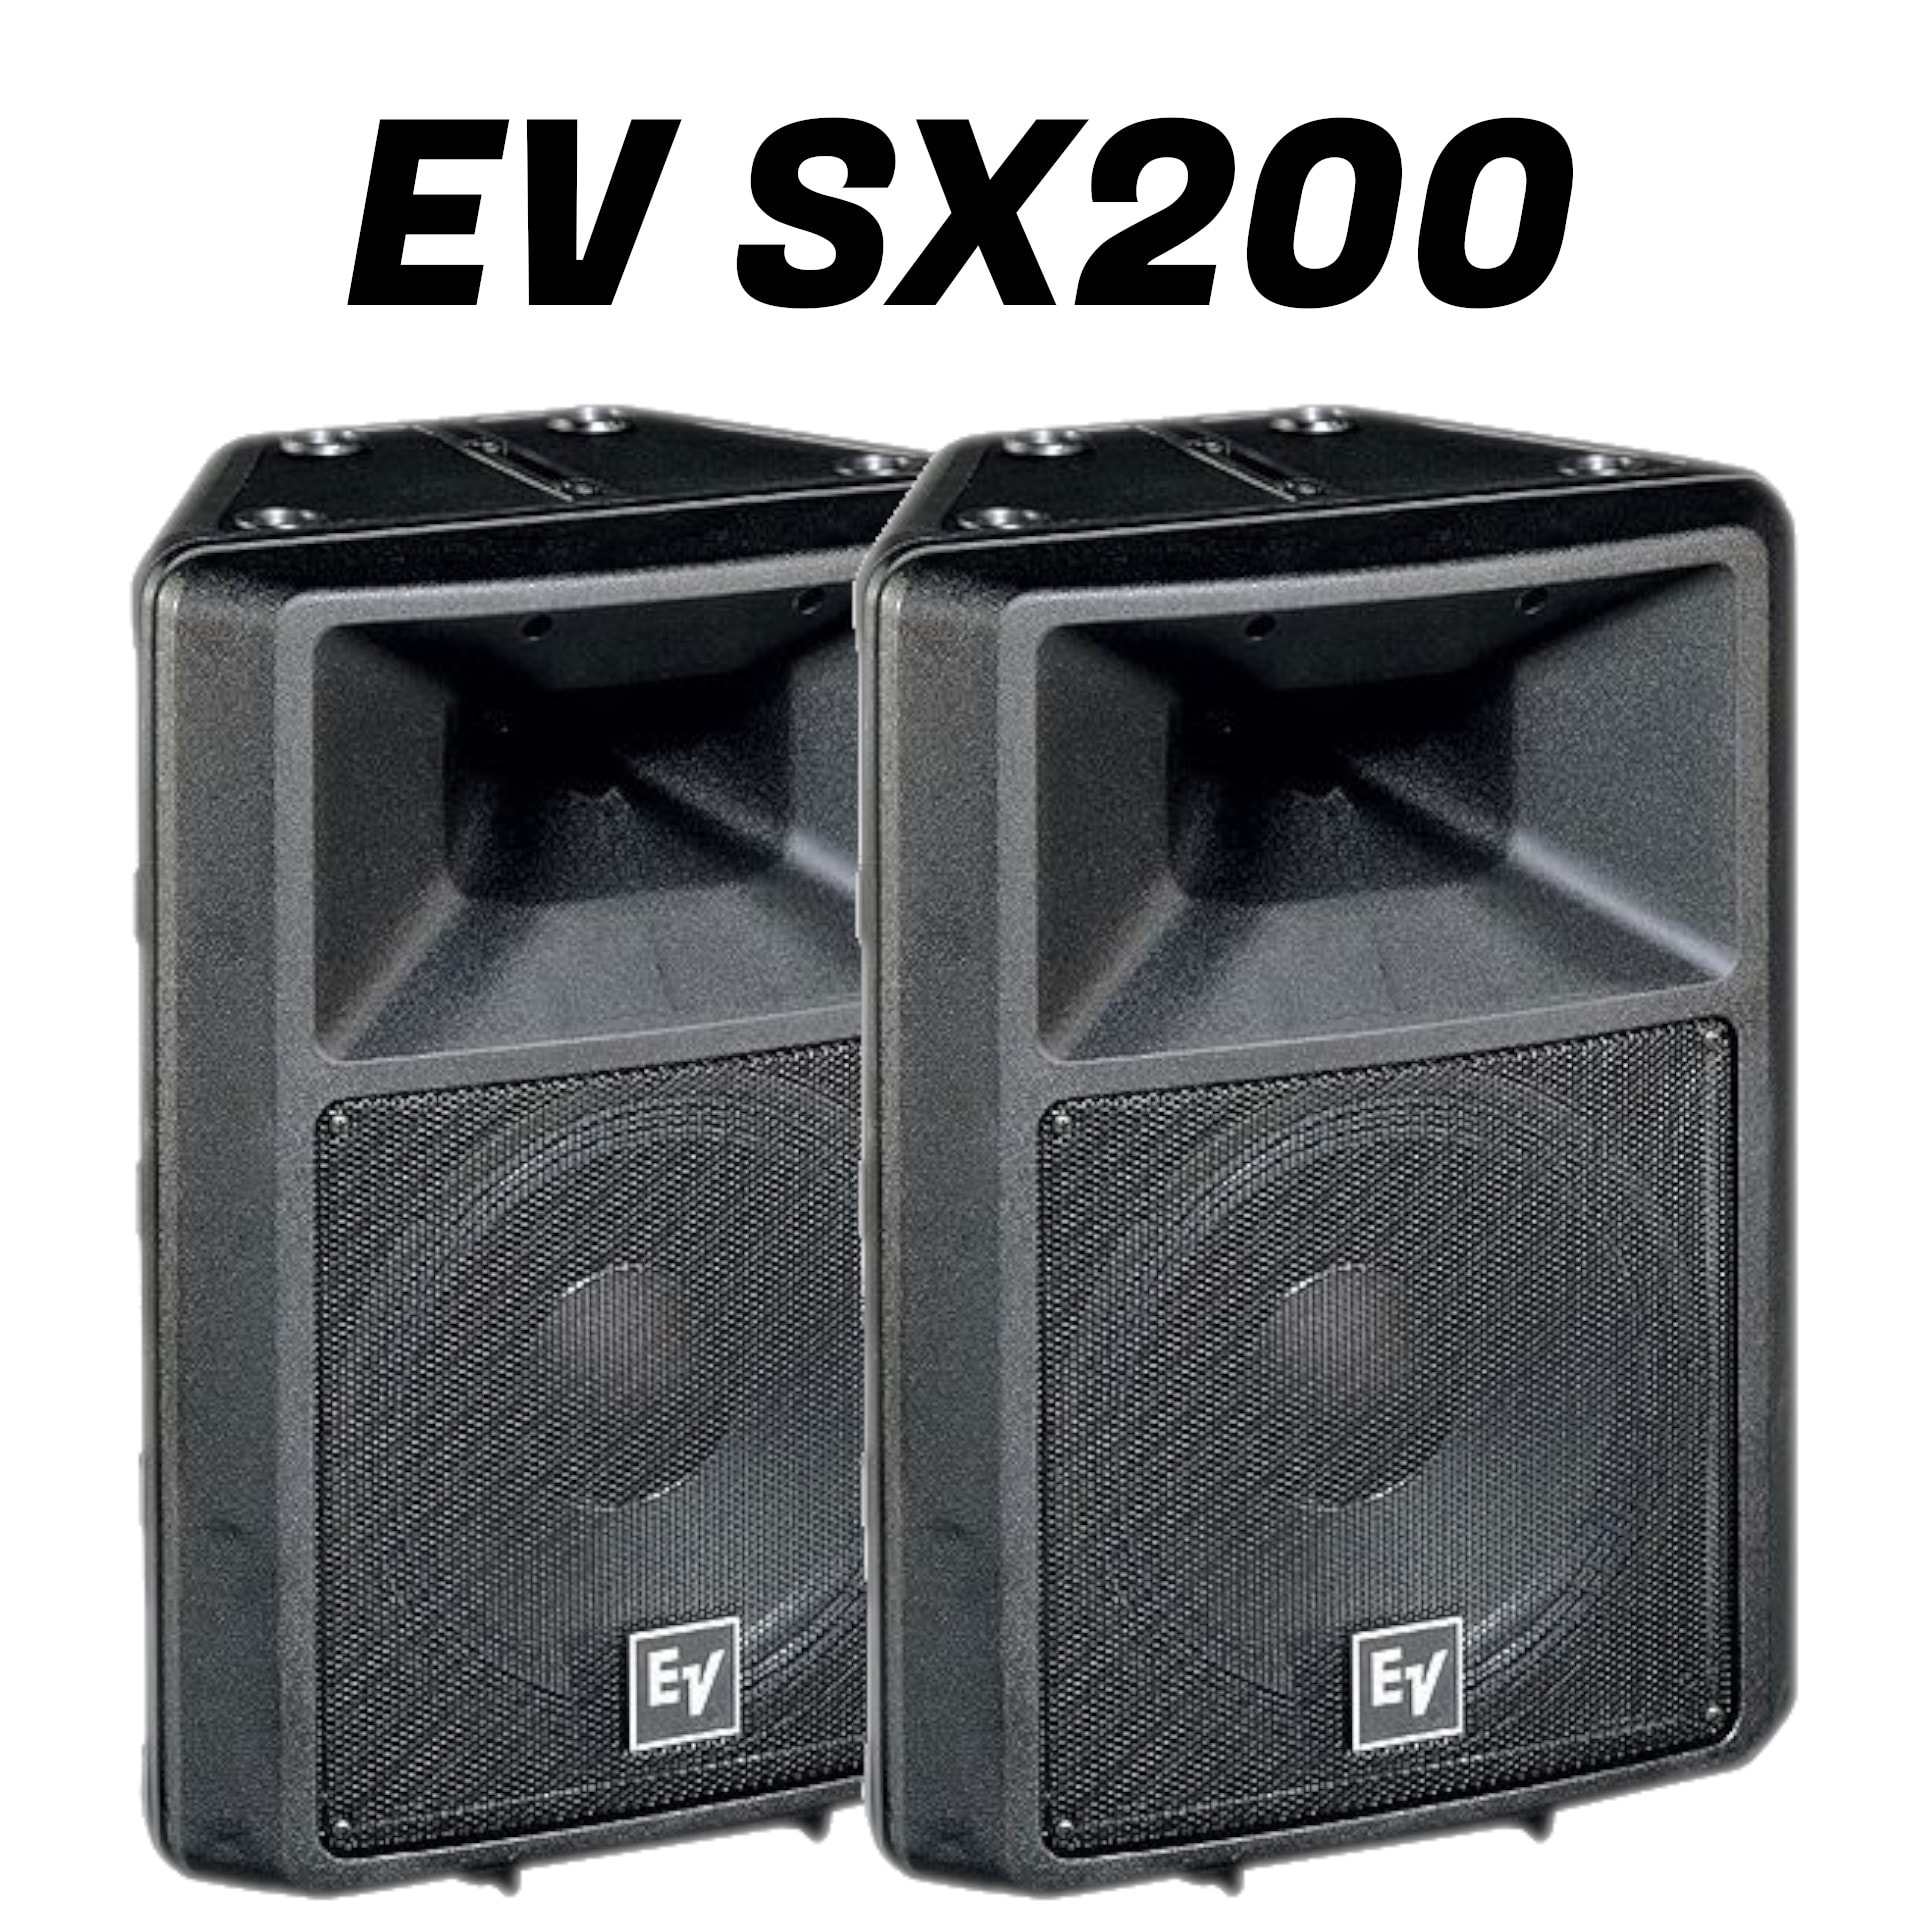 Electro Voice エレクトロボイス 定番スピーカー Sx200 4本 - 配信機器 